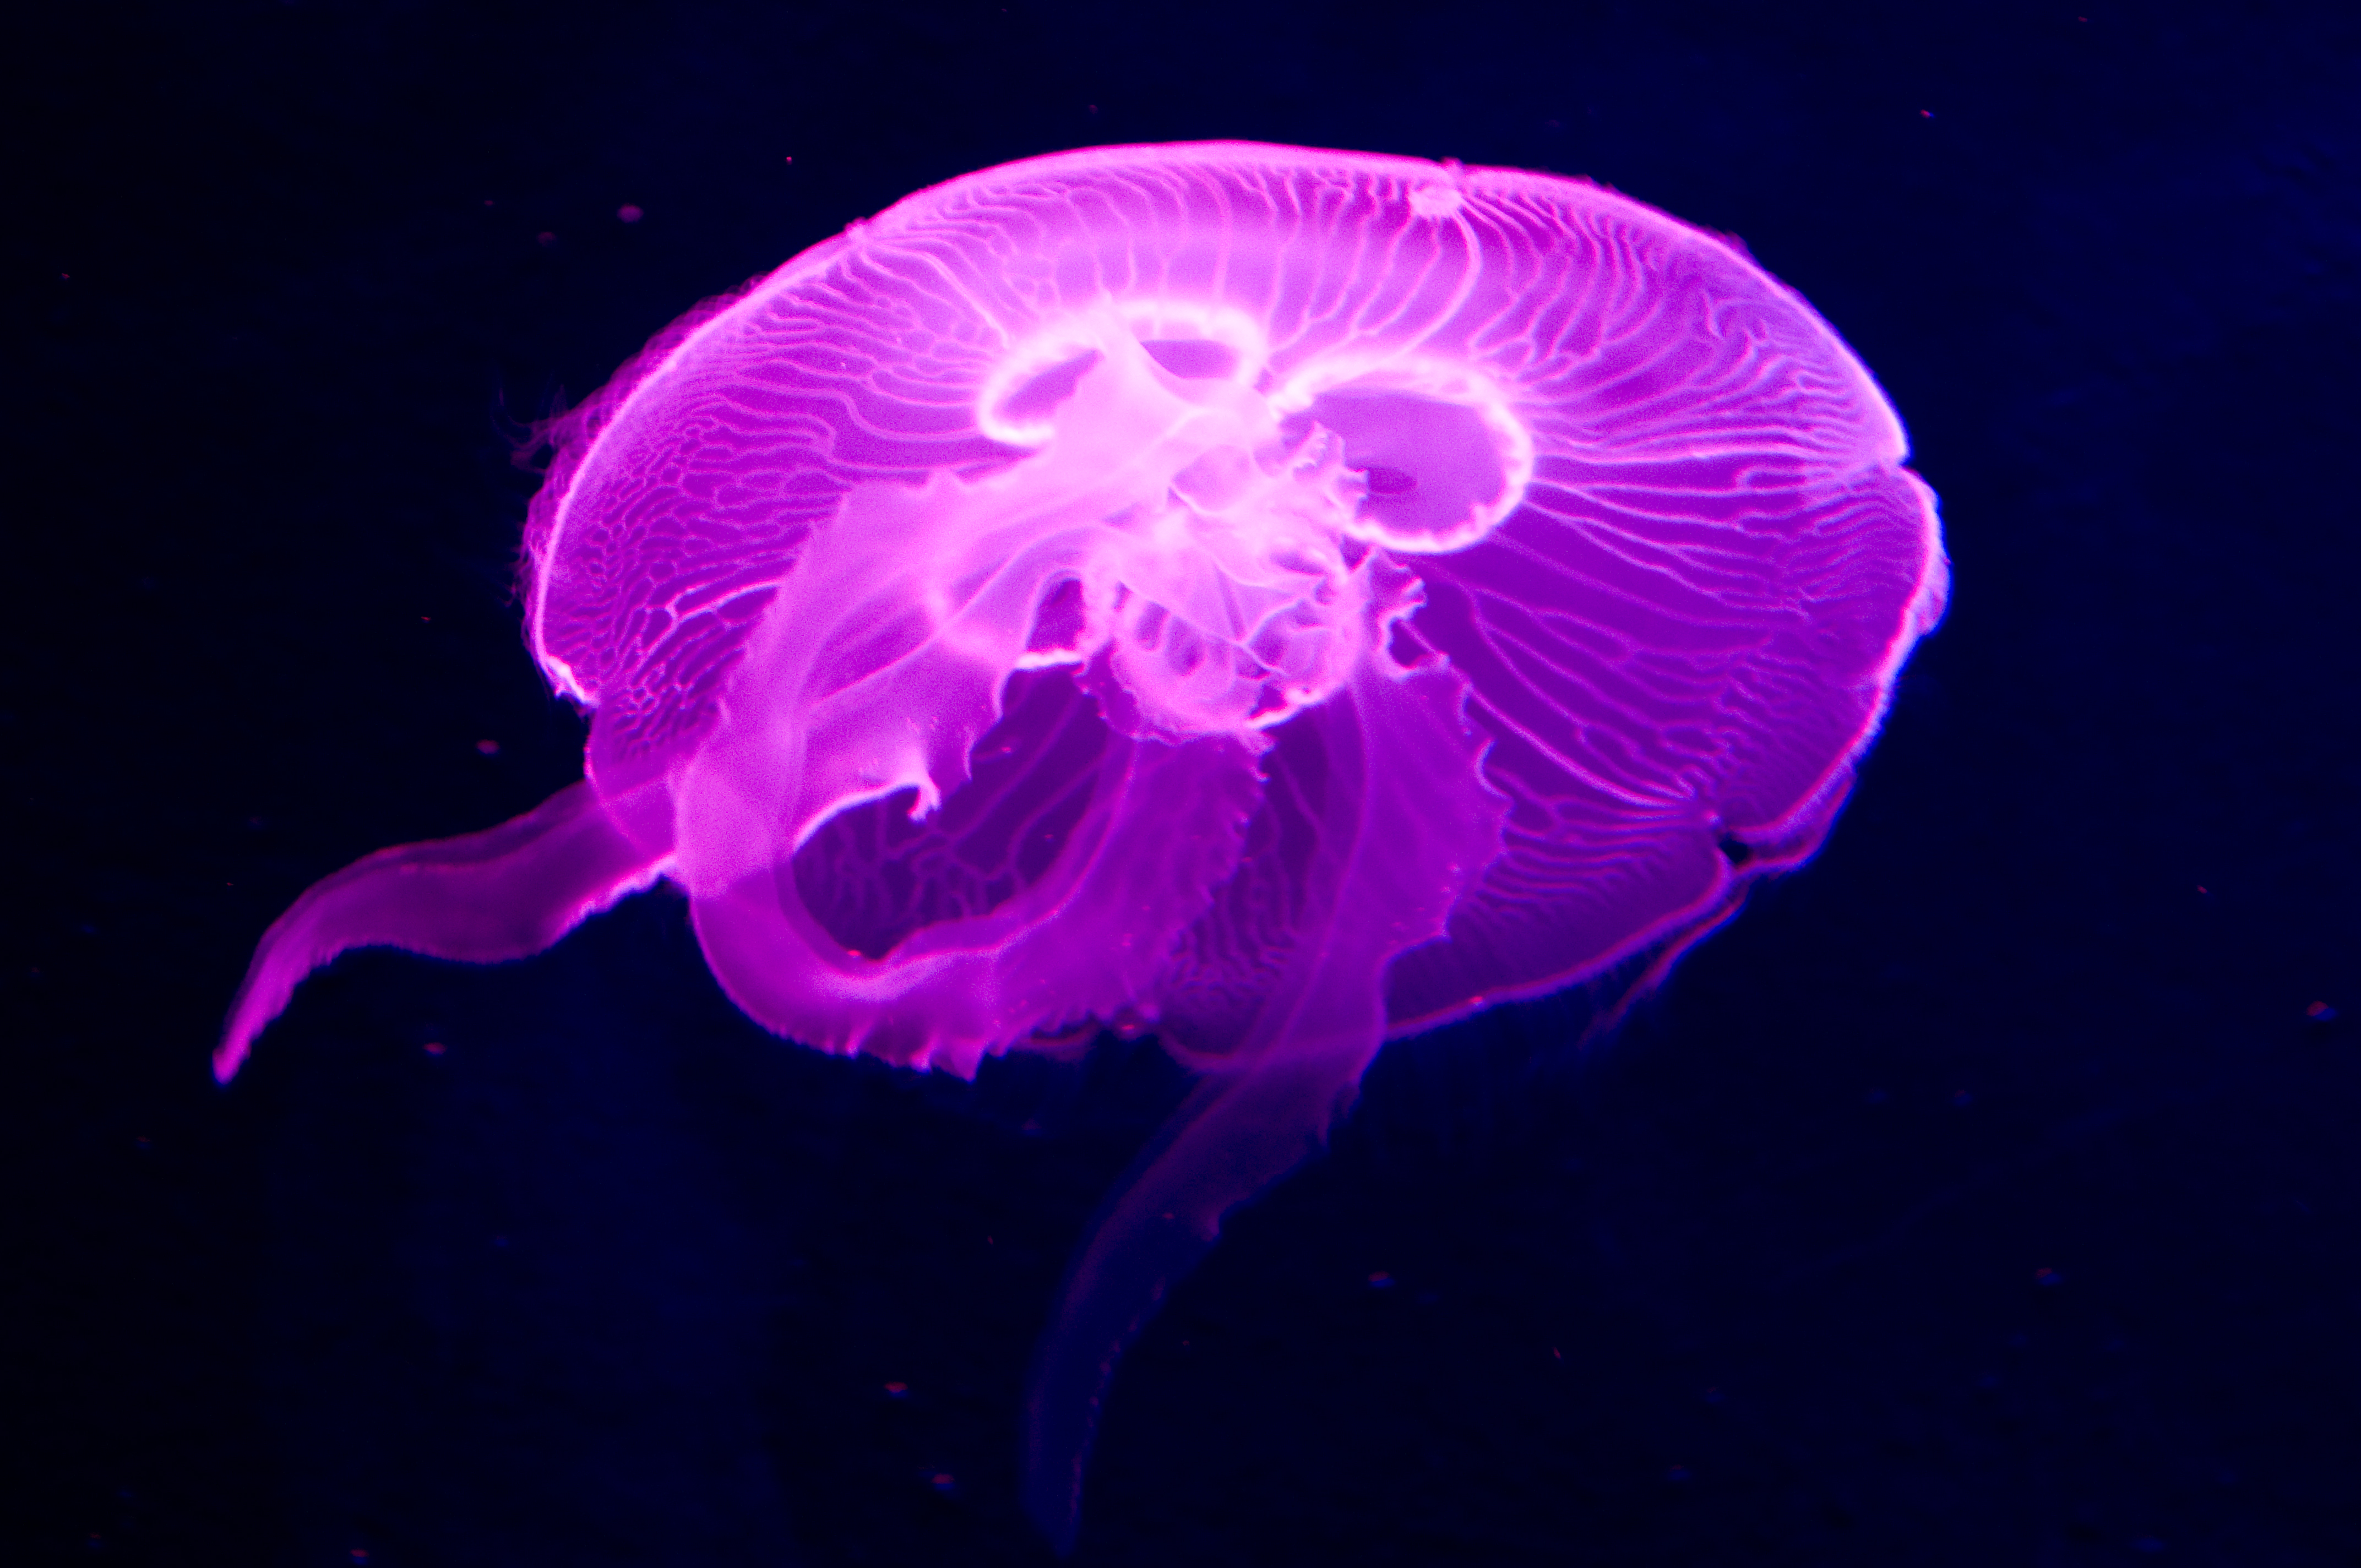 水槽の照明がピンク色に変わるとクラゲはその色を体全体で映してくれました。シャッターチャンスを逃さないように！